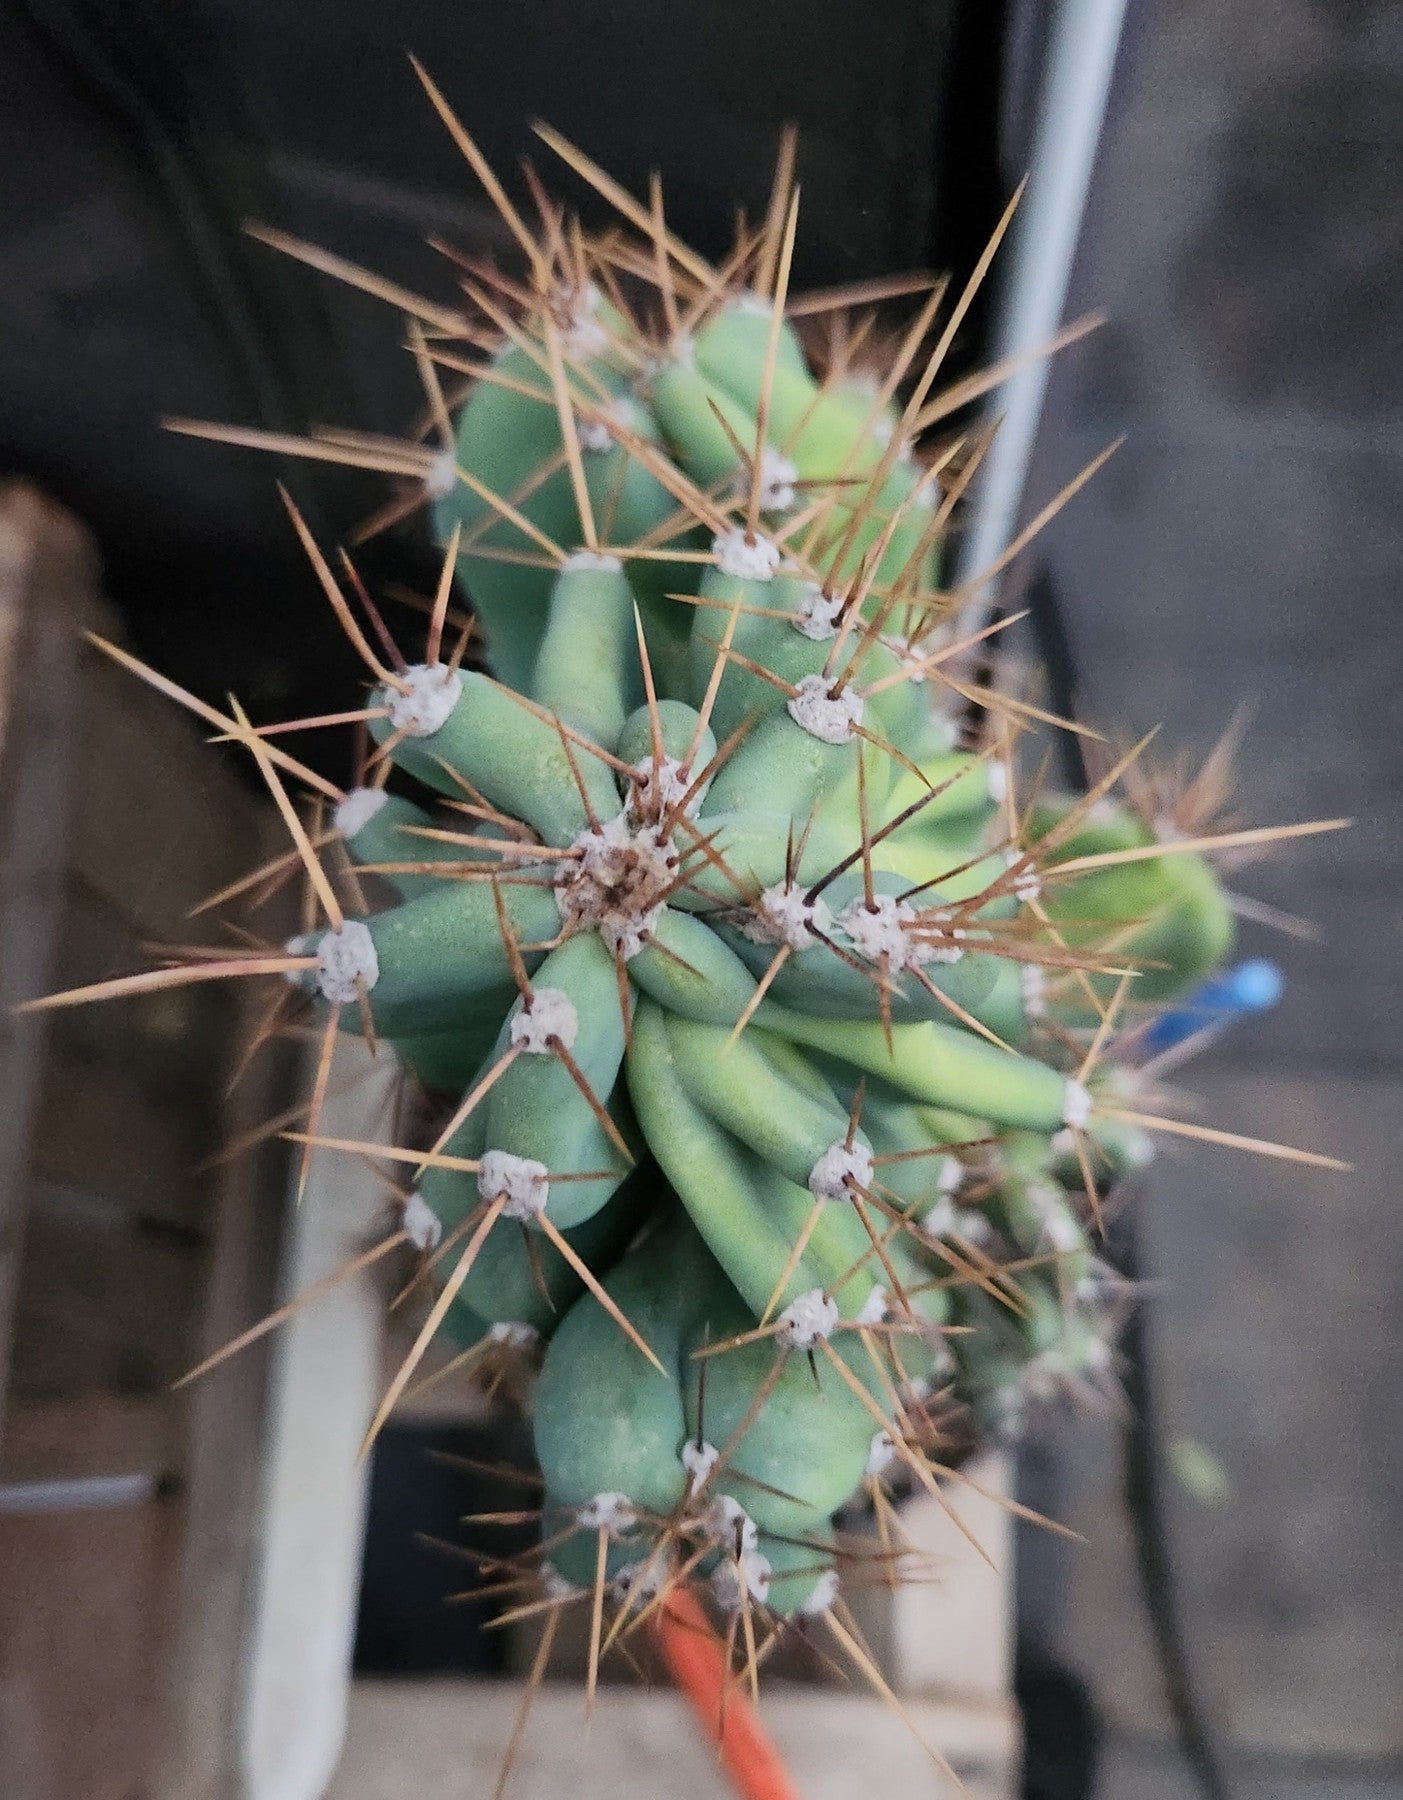 #EC60 Exact Cereus peruvianus Monstrose Cactus 17”-Cactus - Large - Exact-The Succulent Source